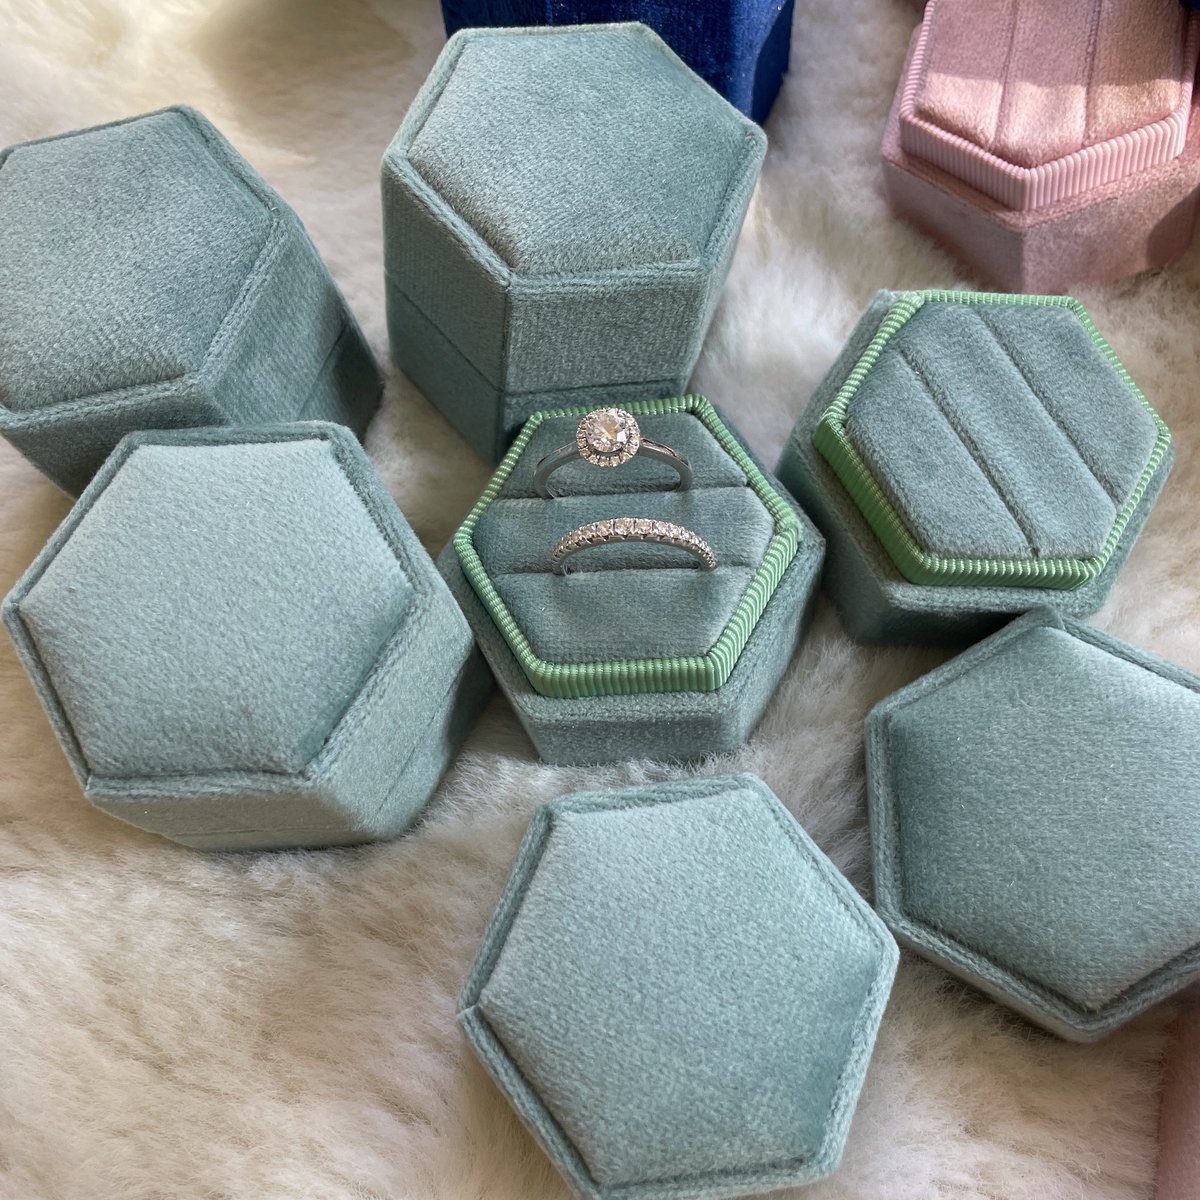 Vintage geïnspireerde Hexagon fluwelen trouwring box-lichtgroen-voor 2 rings